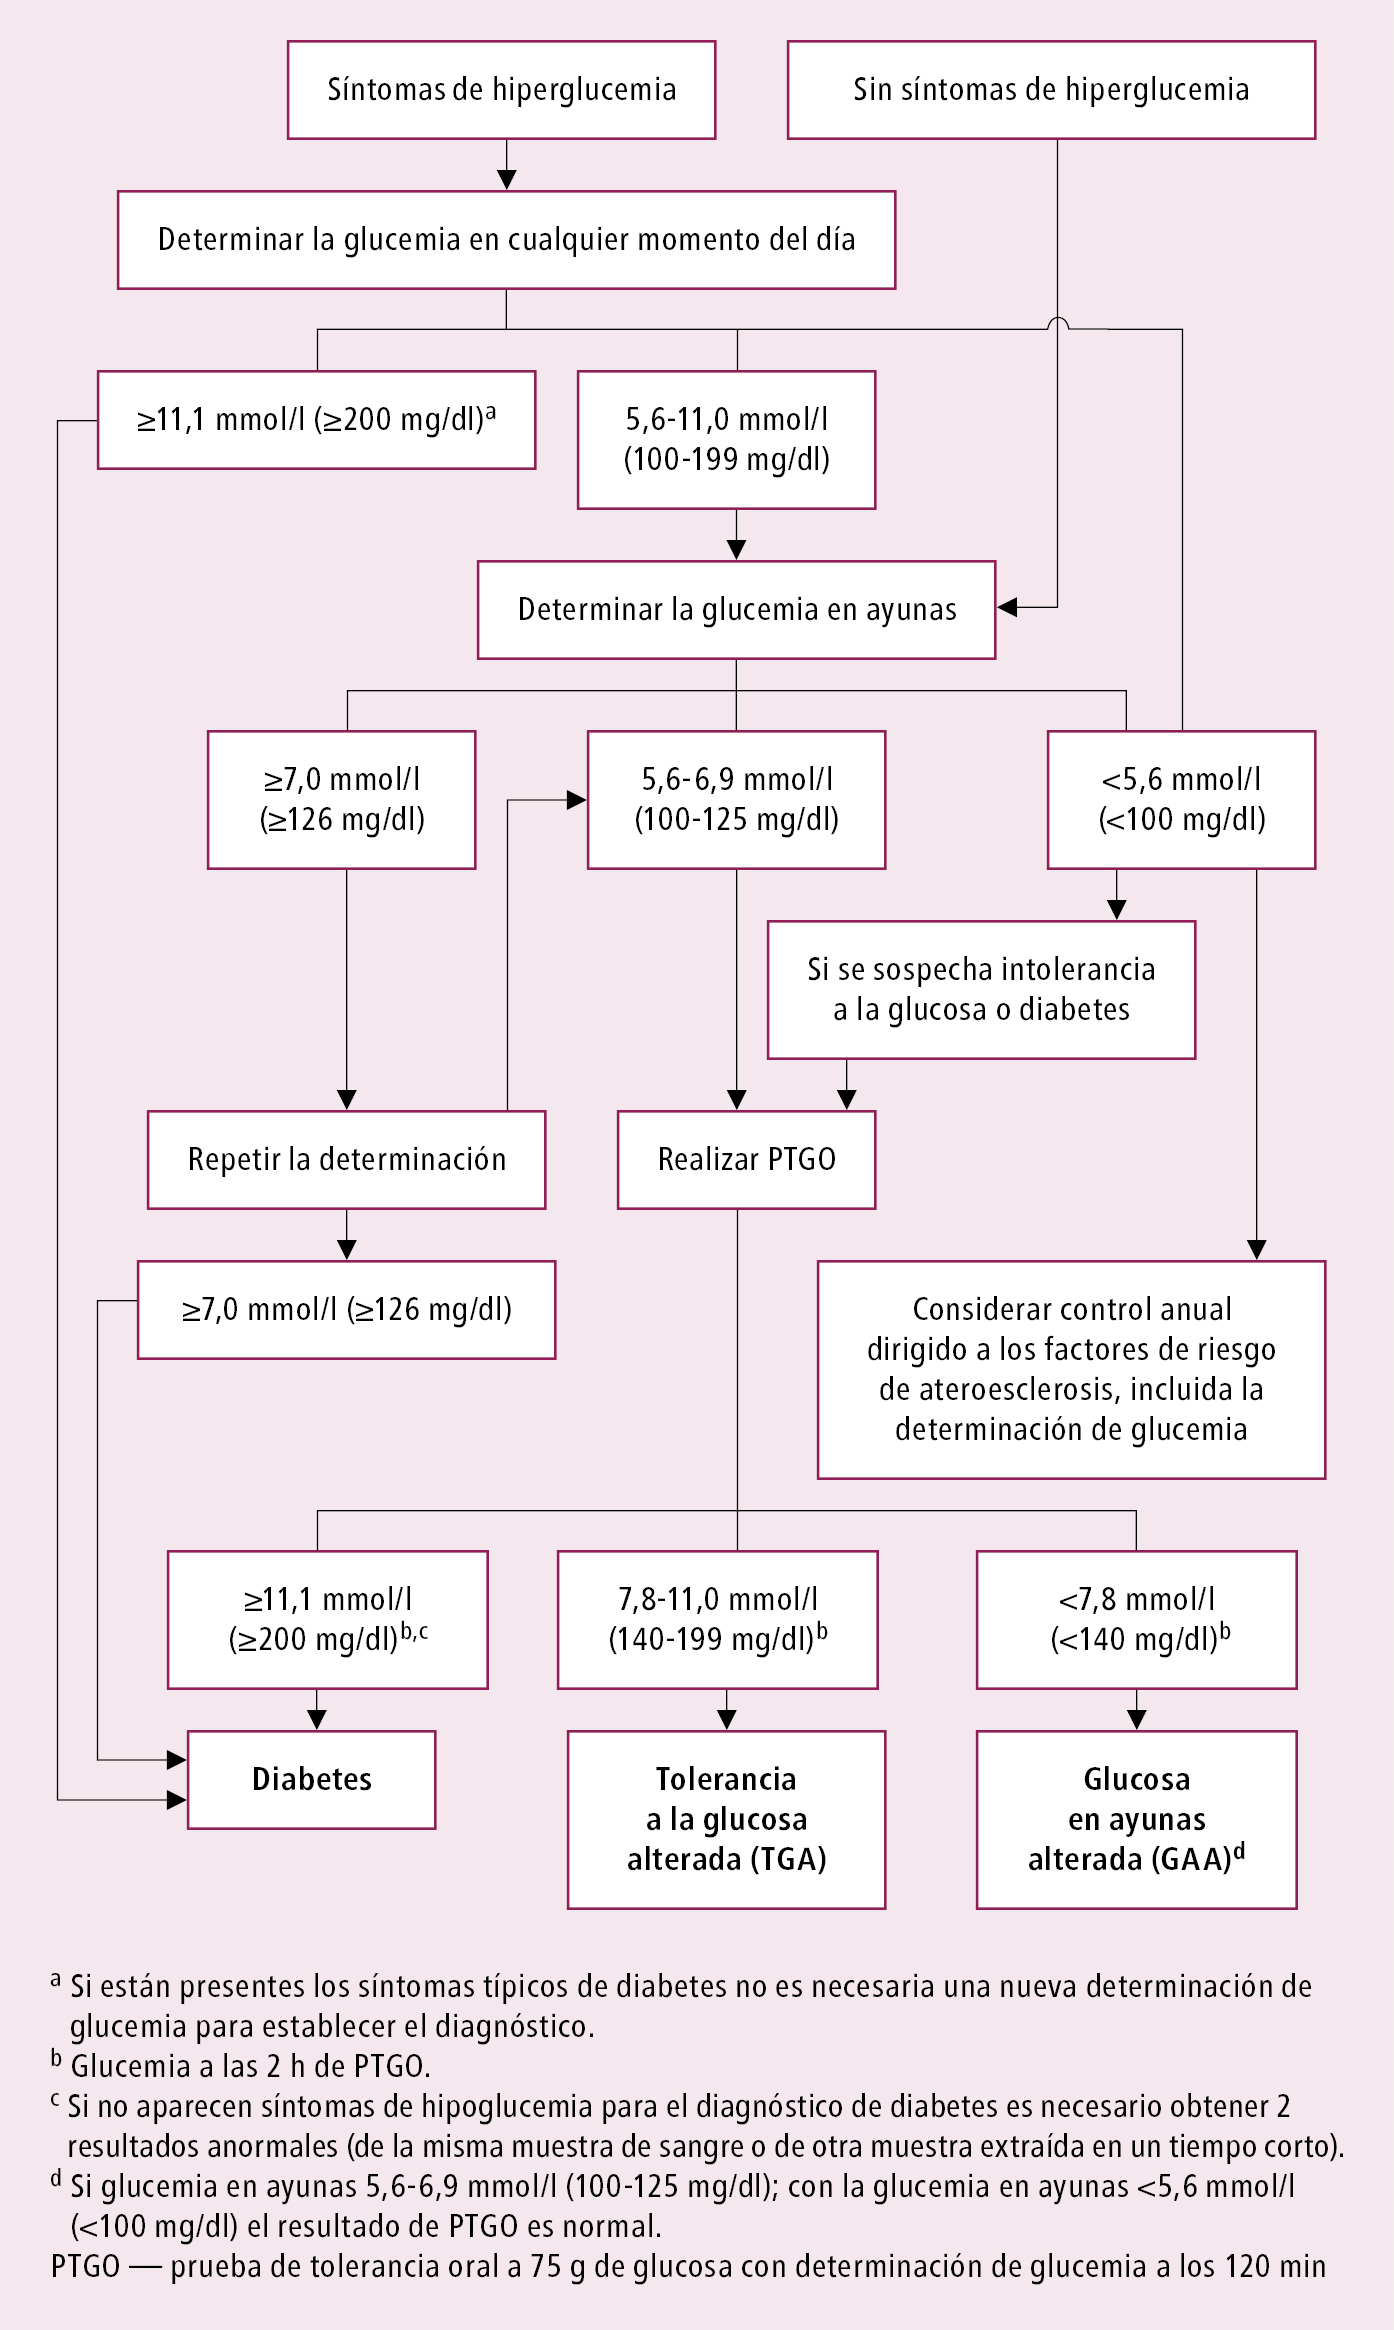    Fig. 14.1-1.  Algoritmo diagnóstico de diabetes   